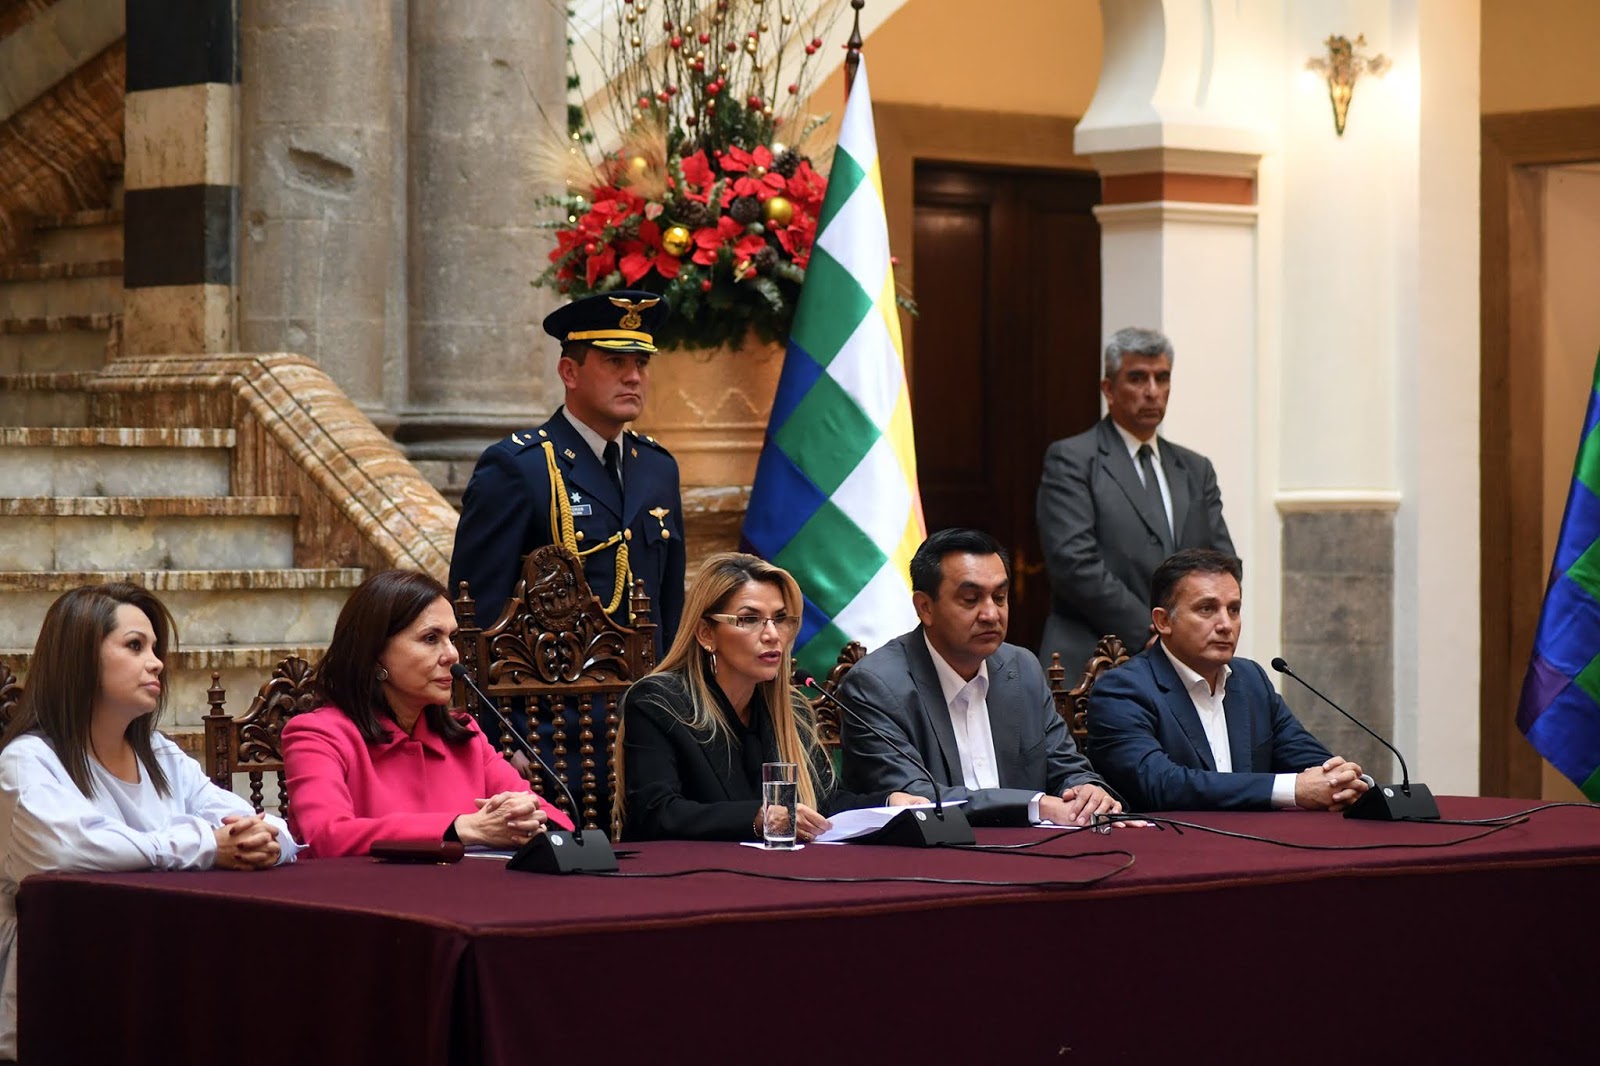 El Gobierno boliviano actúa ante las irregularidades en delegaciones diplomáticas aliadas al MAS / ABI